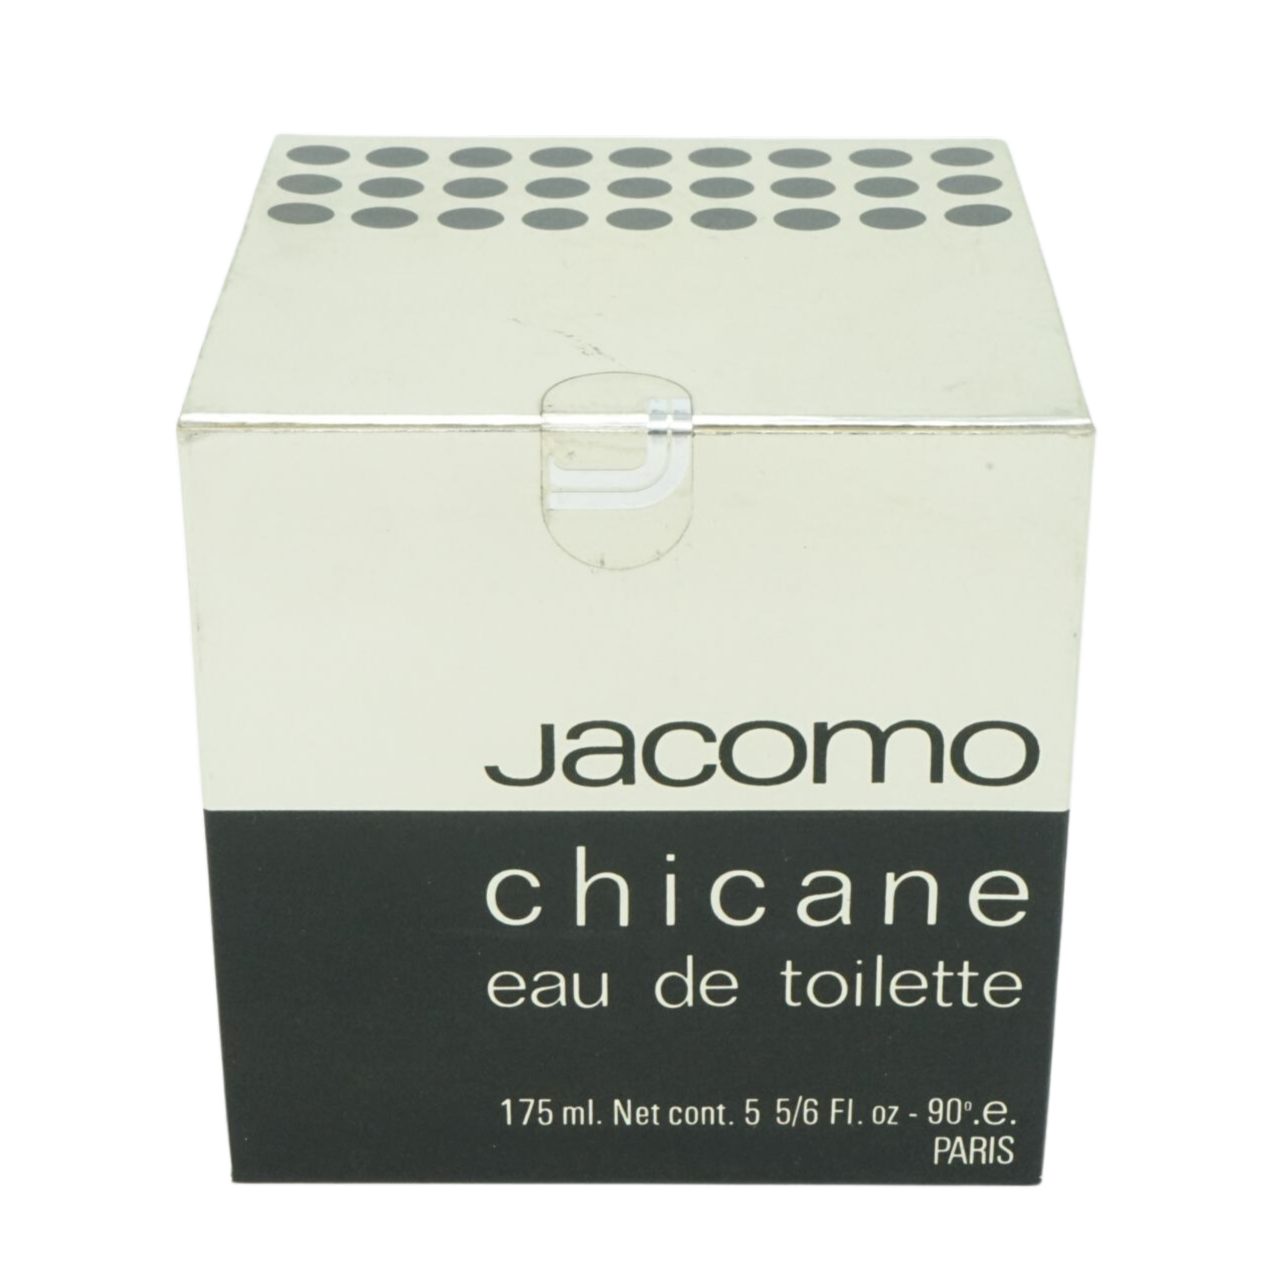 Jacomo Eau de Toilette Jacomo Chicane Eau de Toilette 175ml